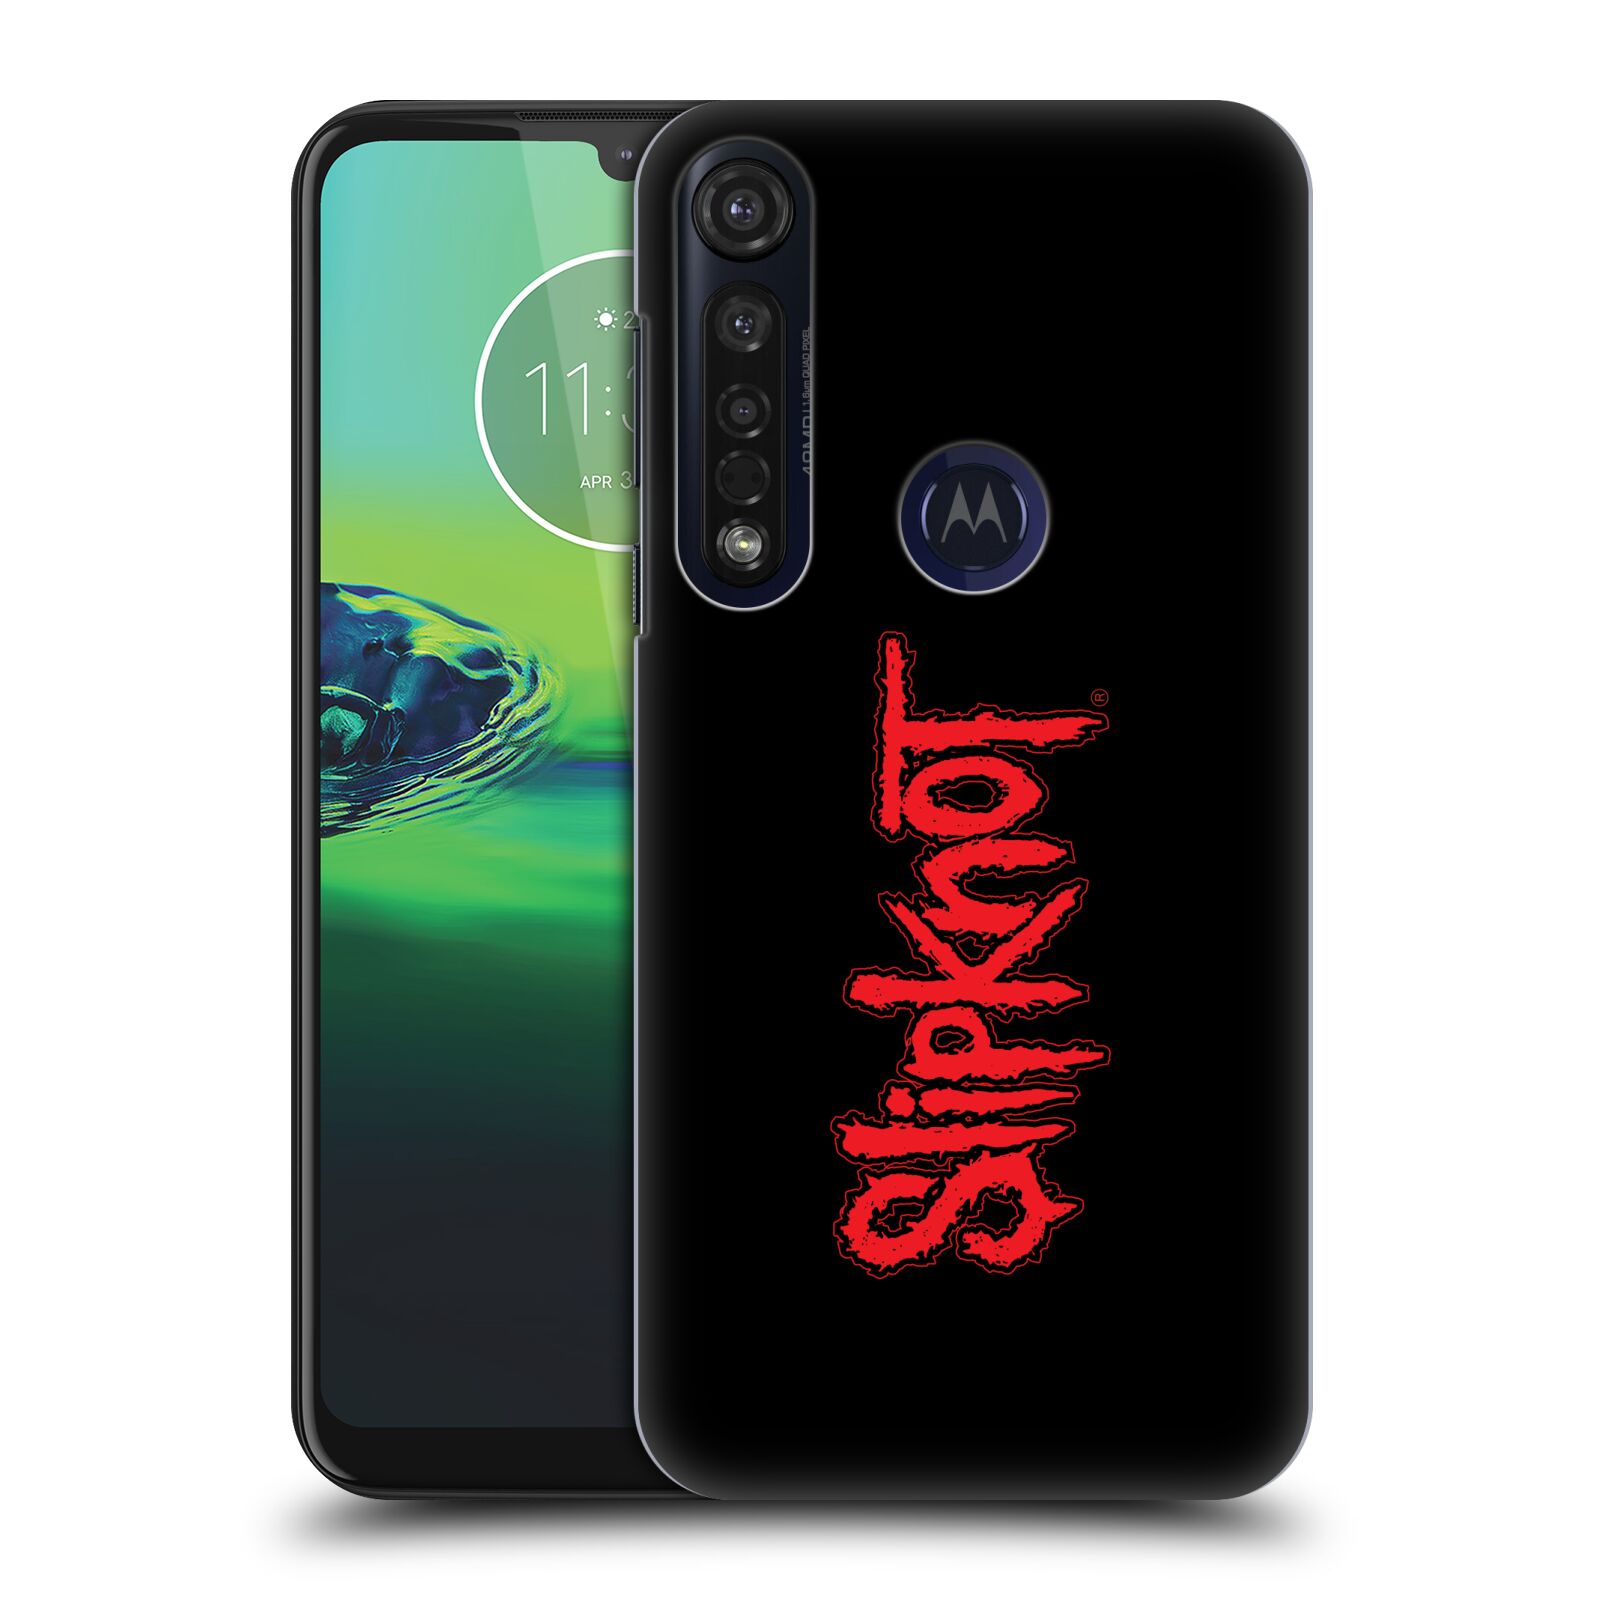 Pouzdro na mobil Motorola Moto G8 PLUS - HEAD CASE - hudební skupina Slipknot logo velké